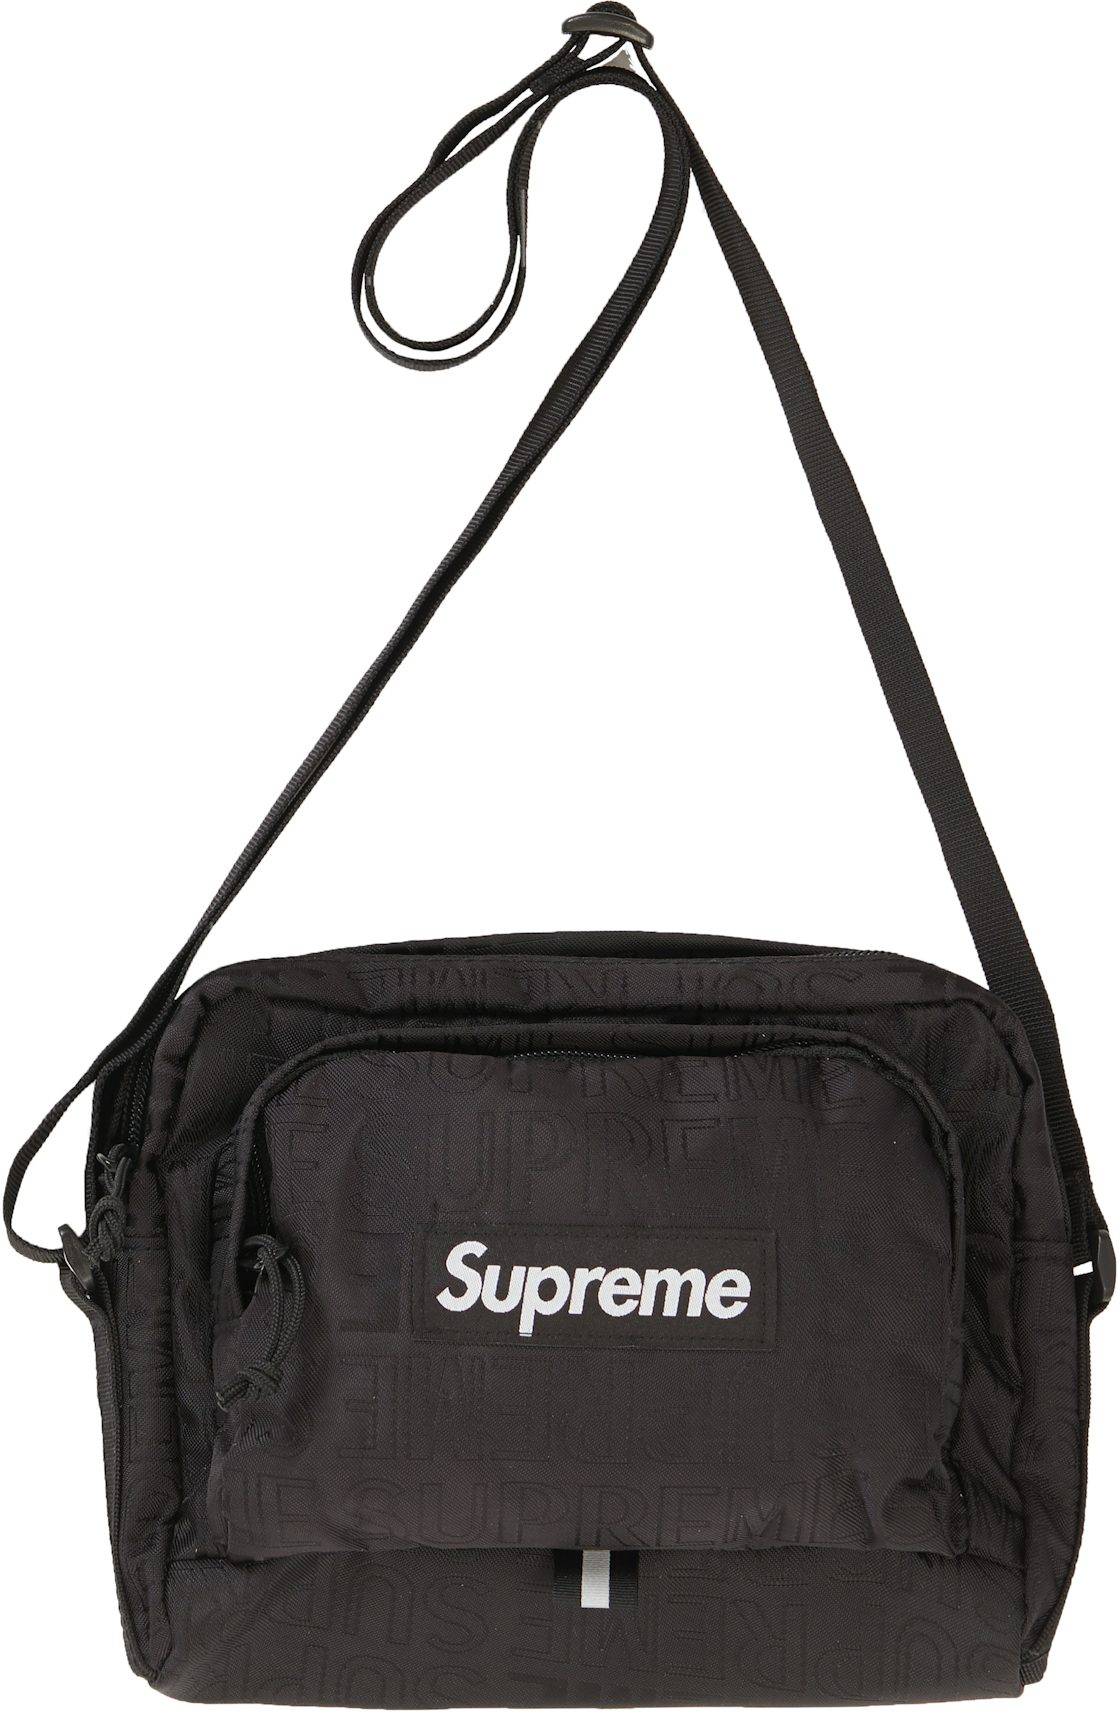 NWOT Supreme Shoulder Bag (SS19)  Shoulder bag, Bags, Good listener